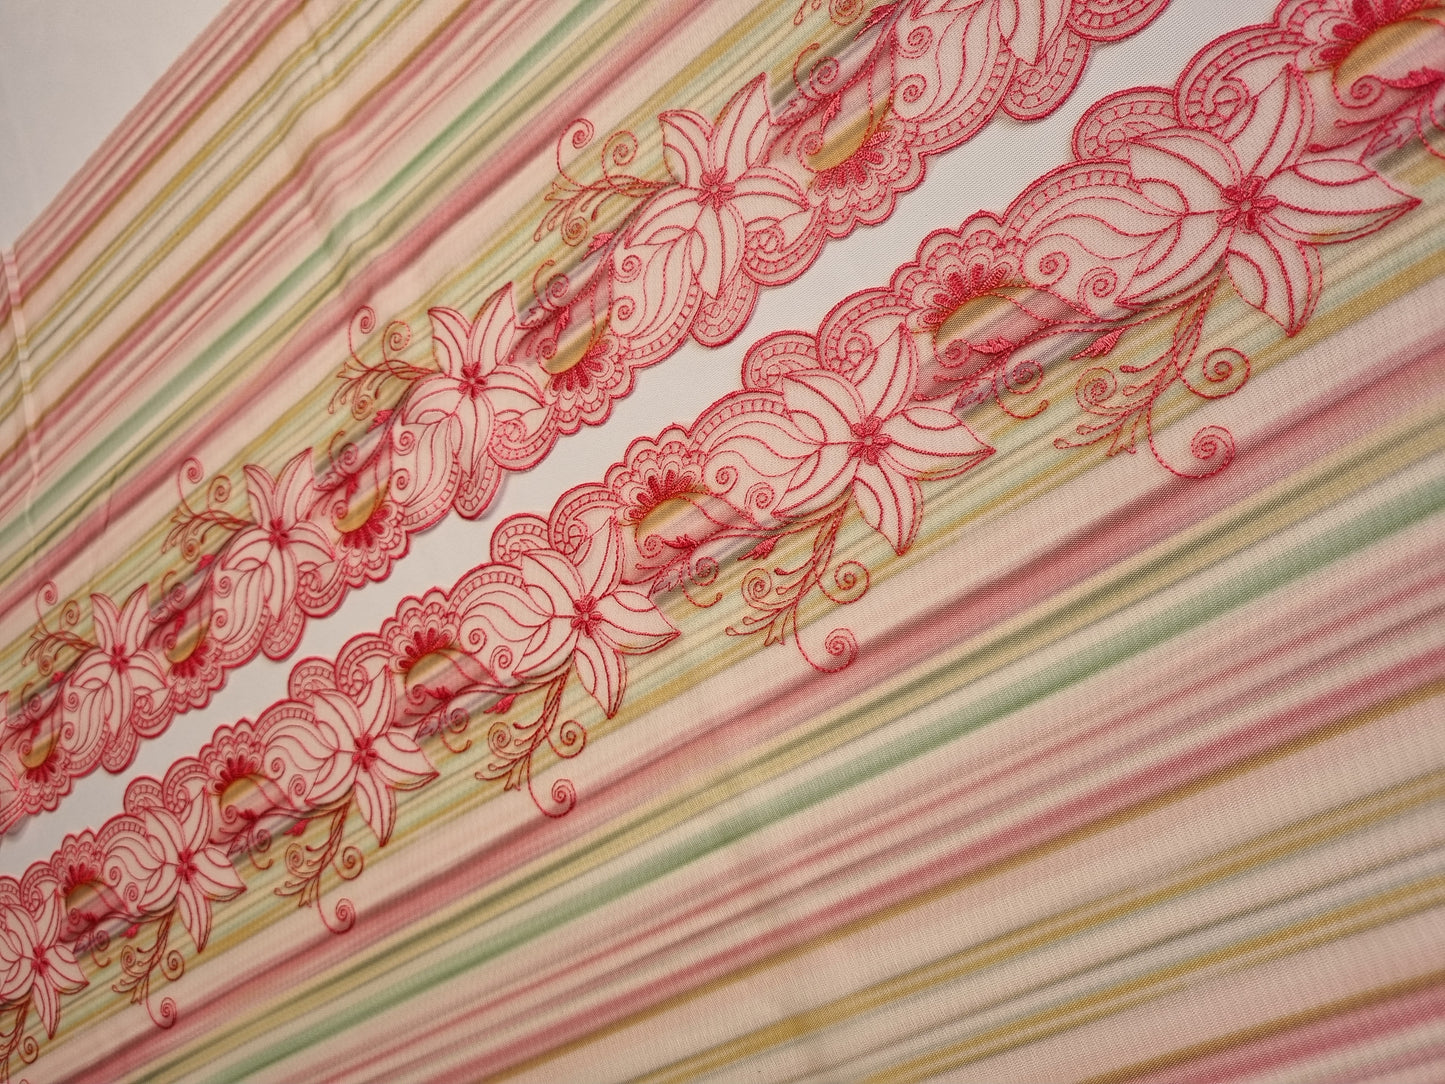 Tule kant met bont gestreepte print en roze geborduurde lelies